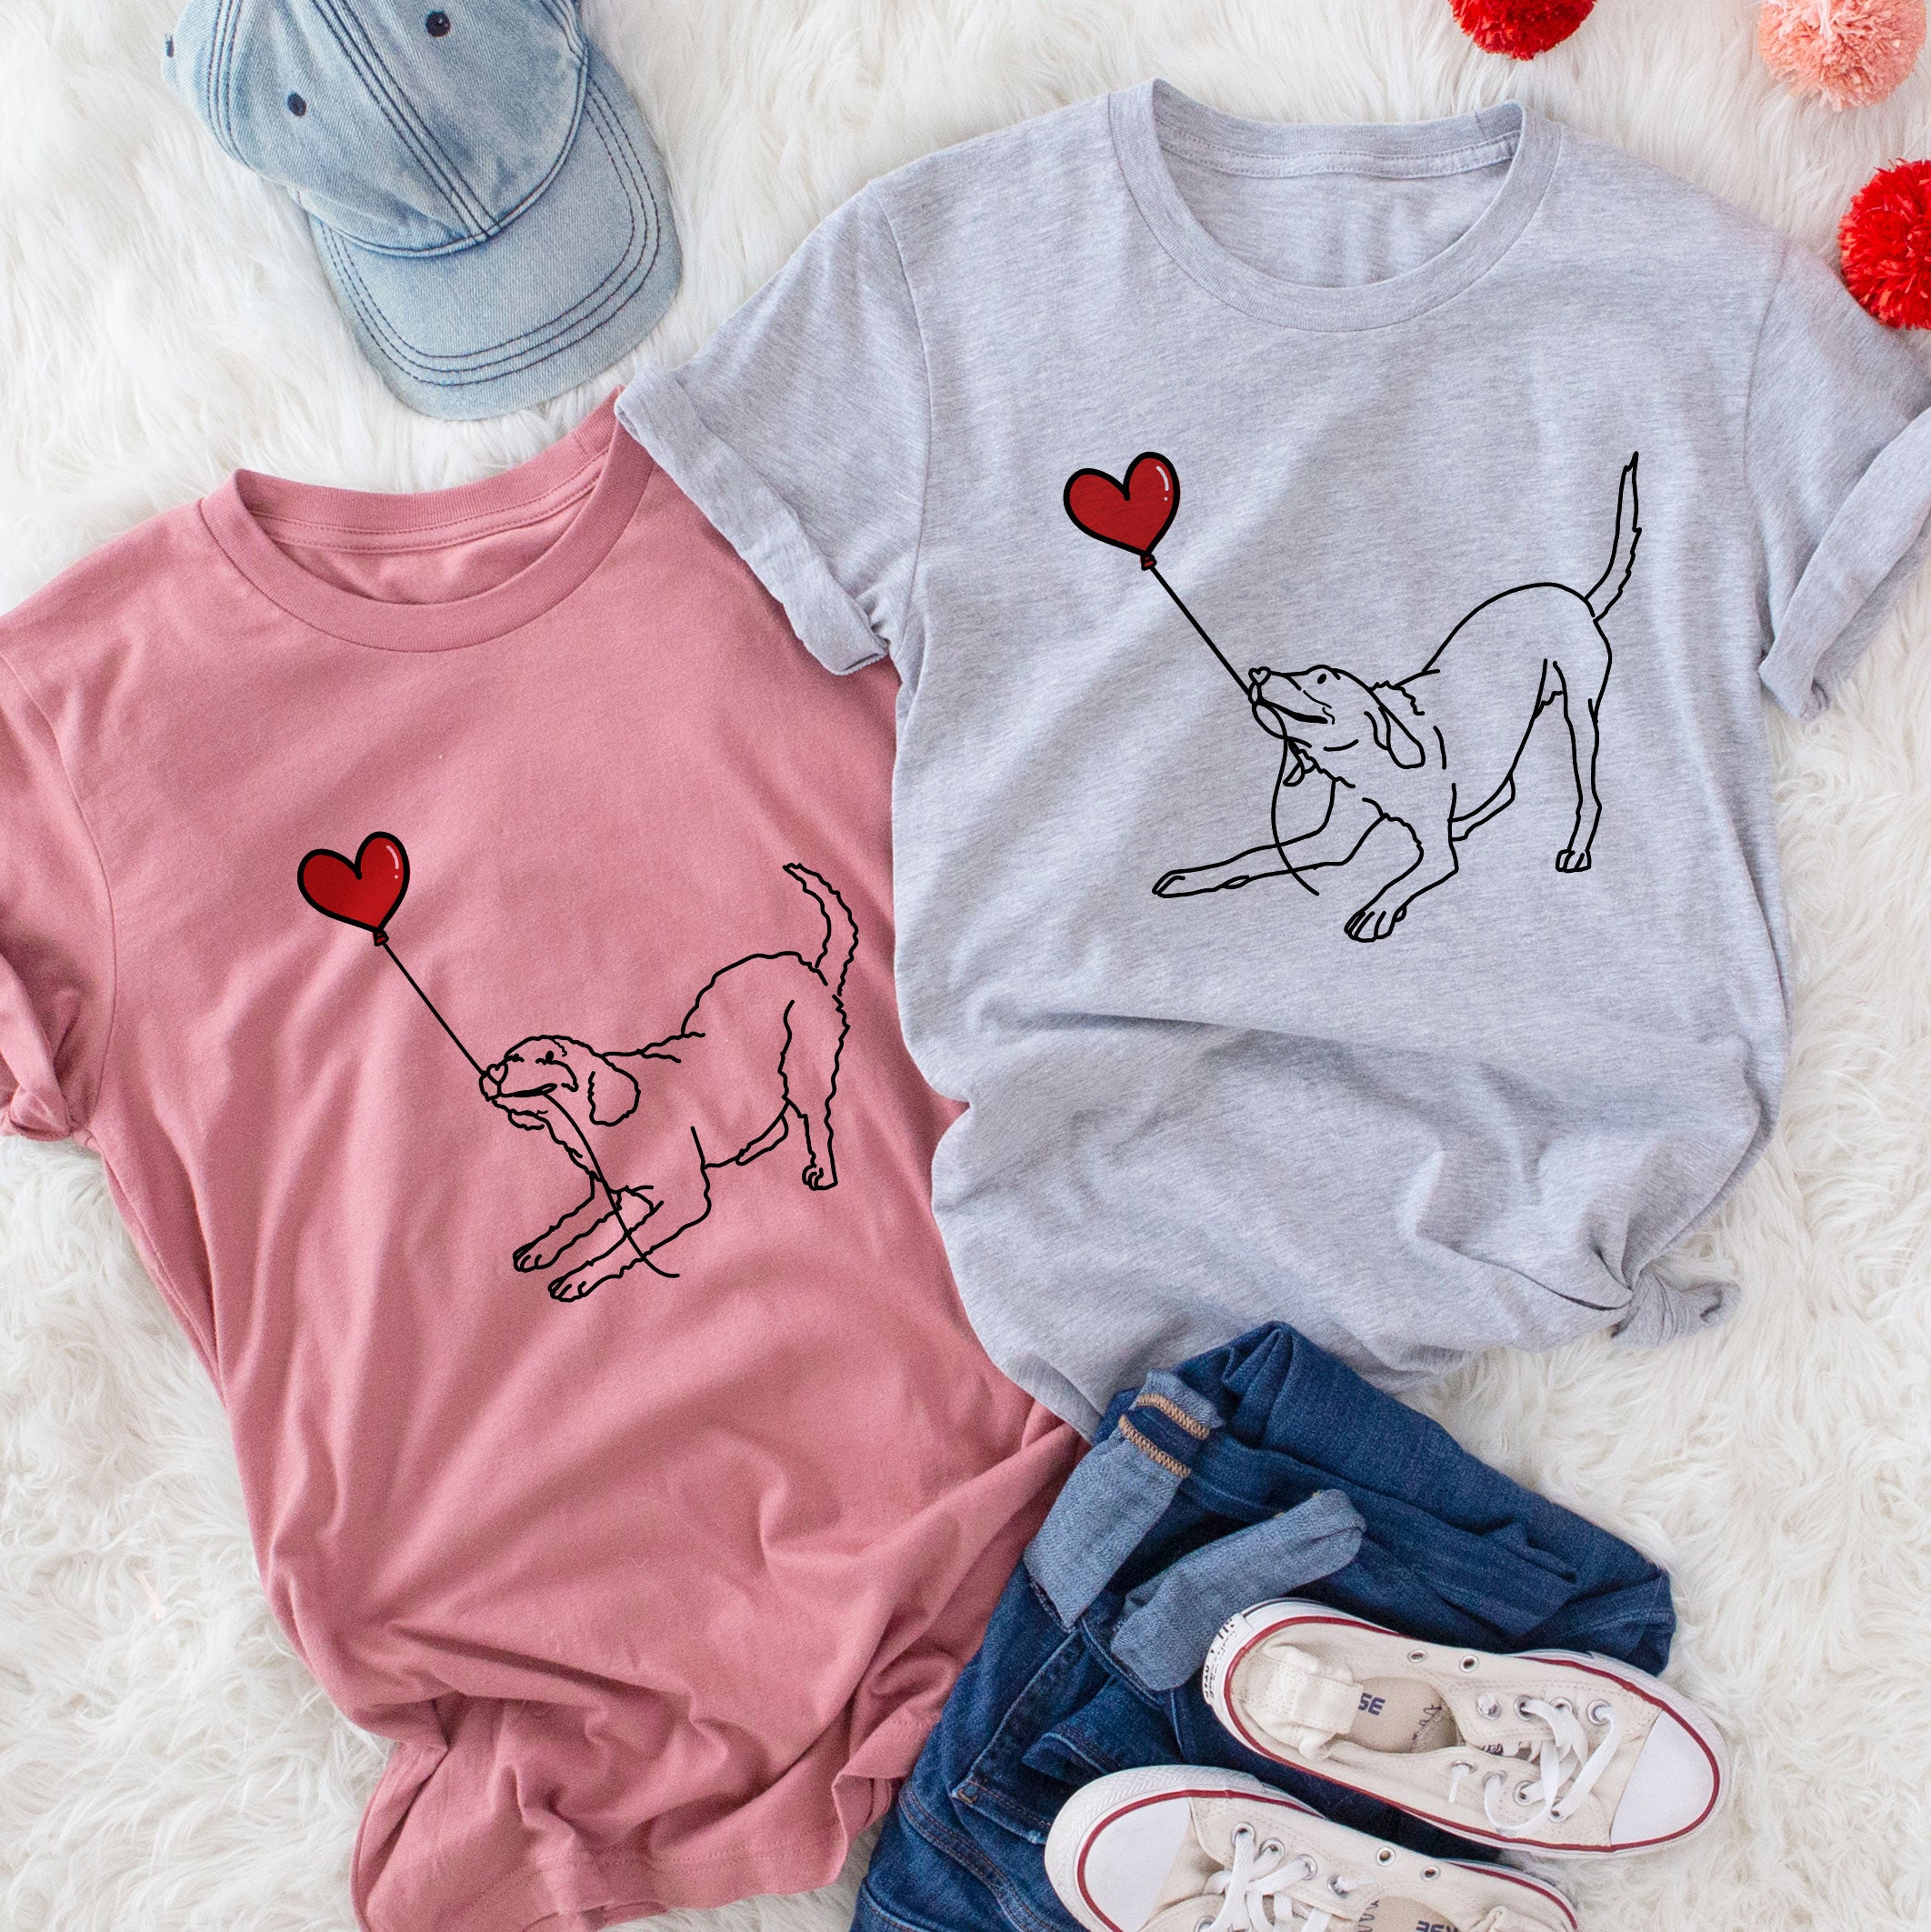 Heart String dog shirts